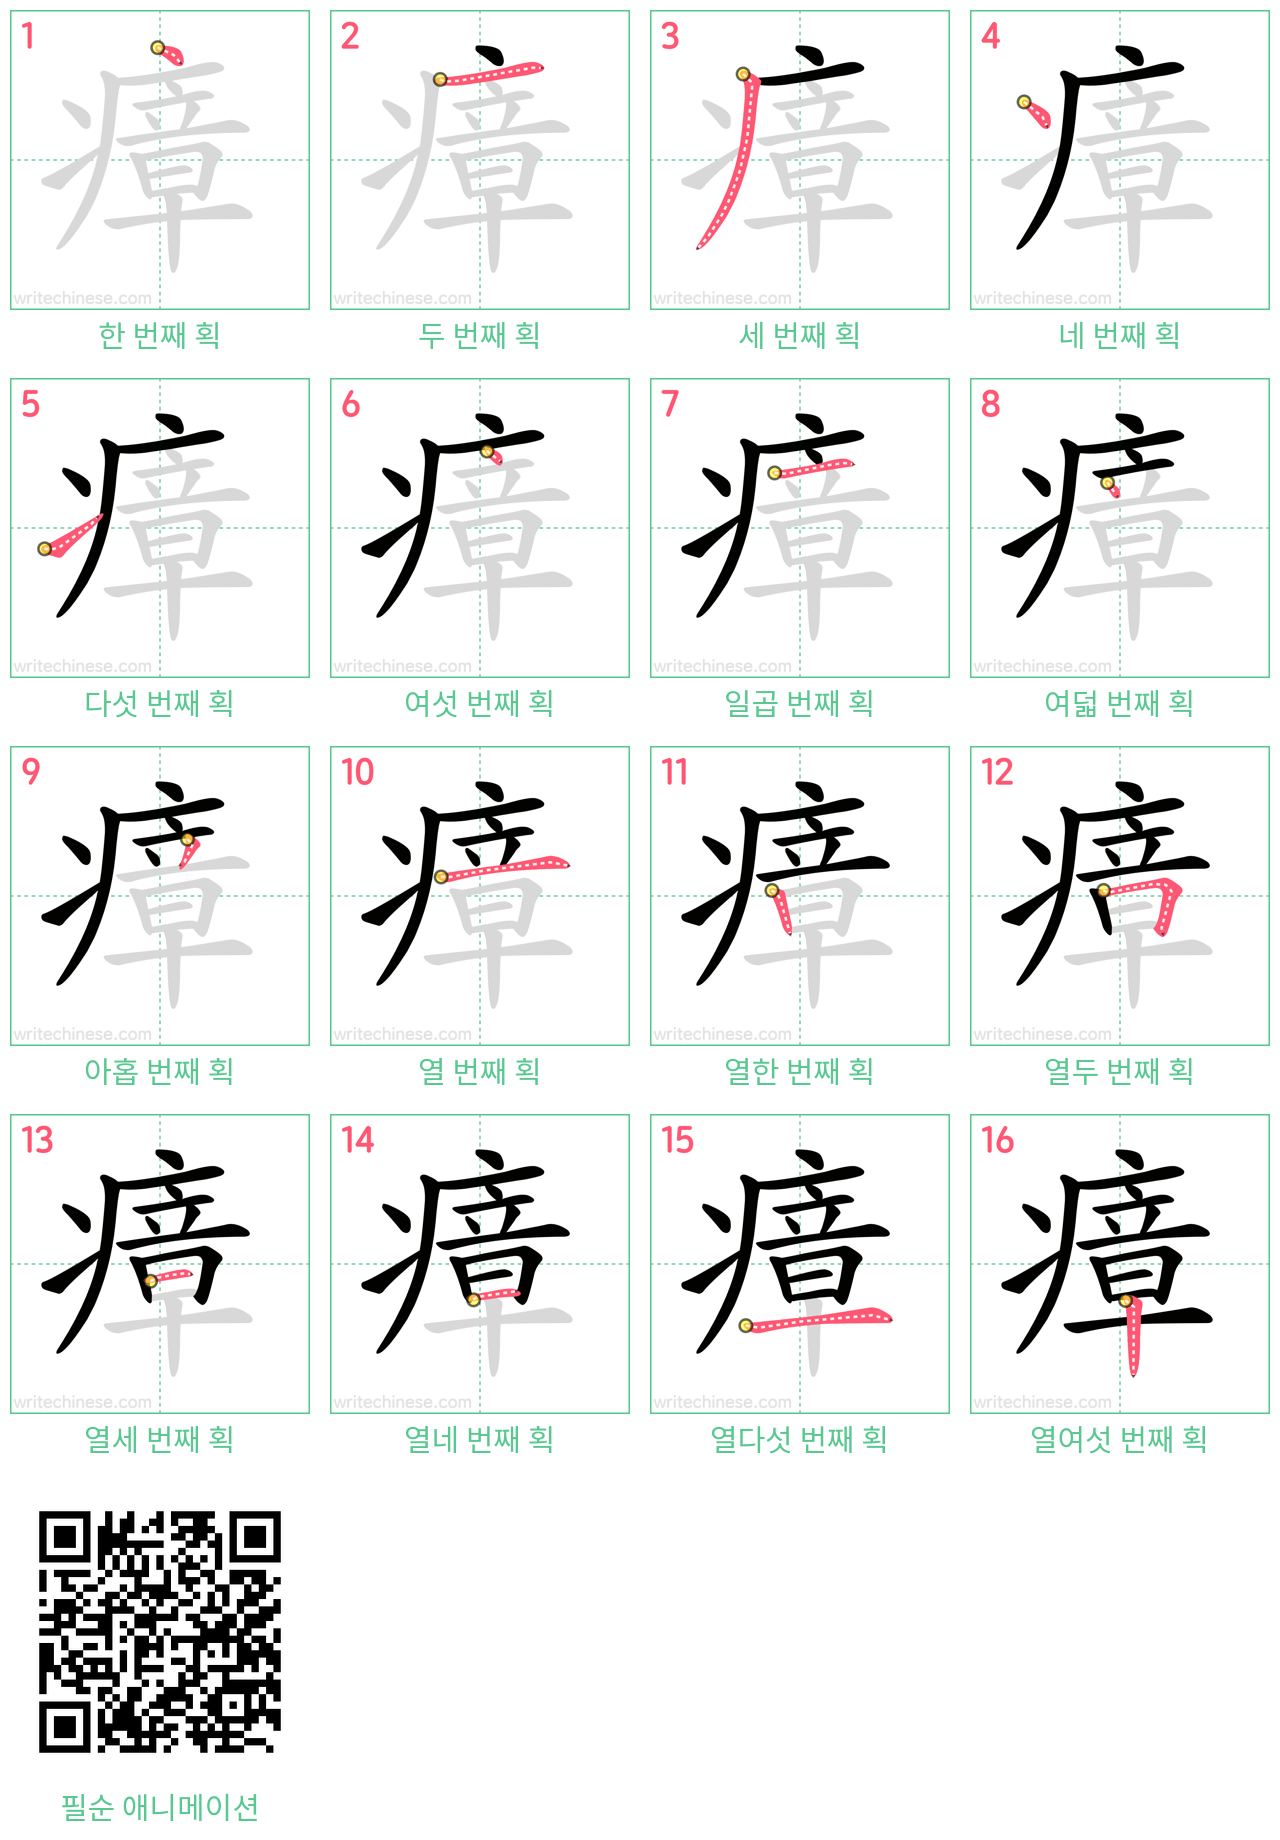 瘴 step-by-step stroke order diagrams